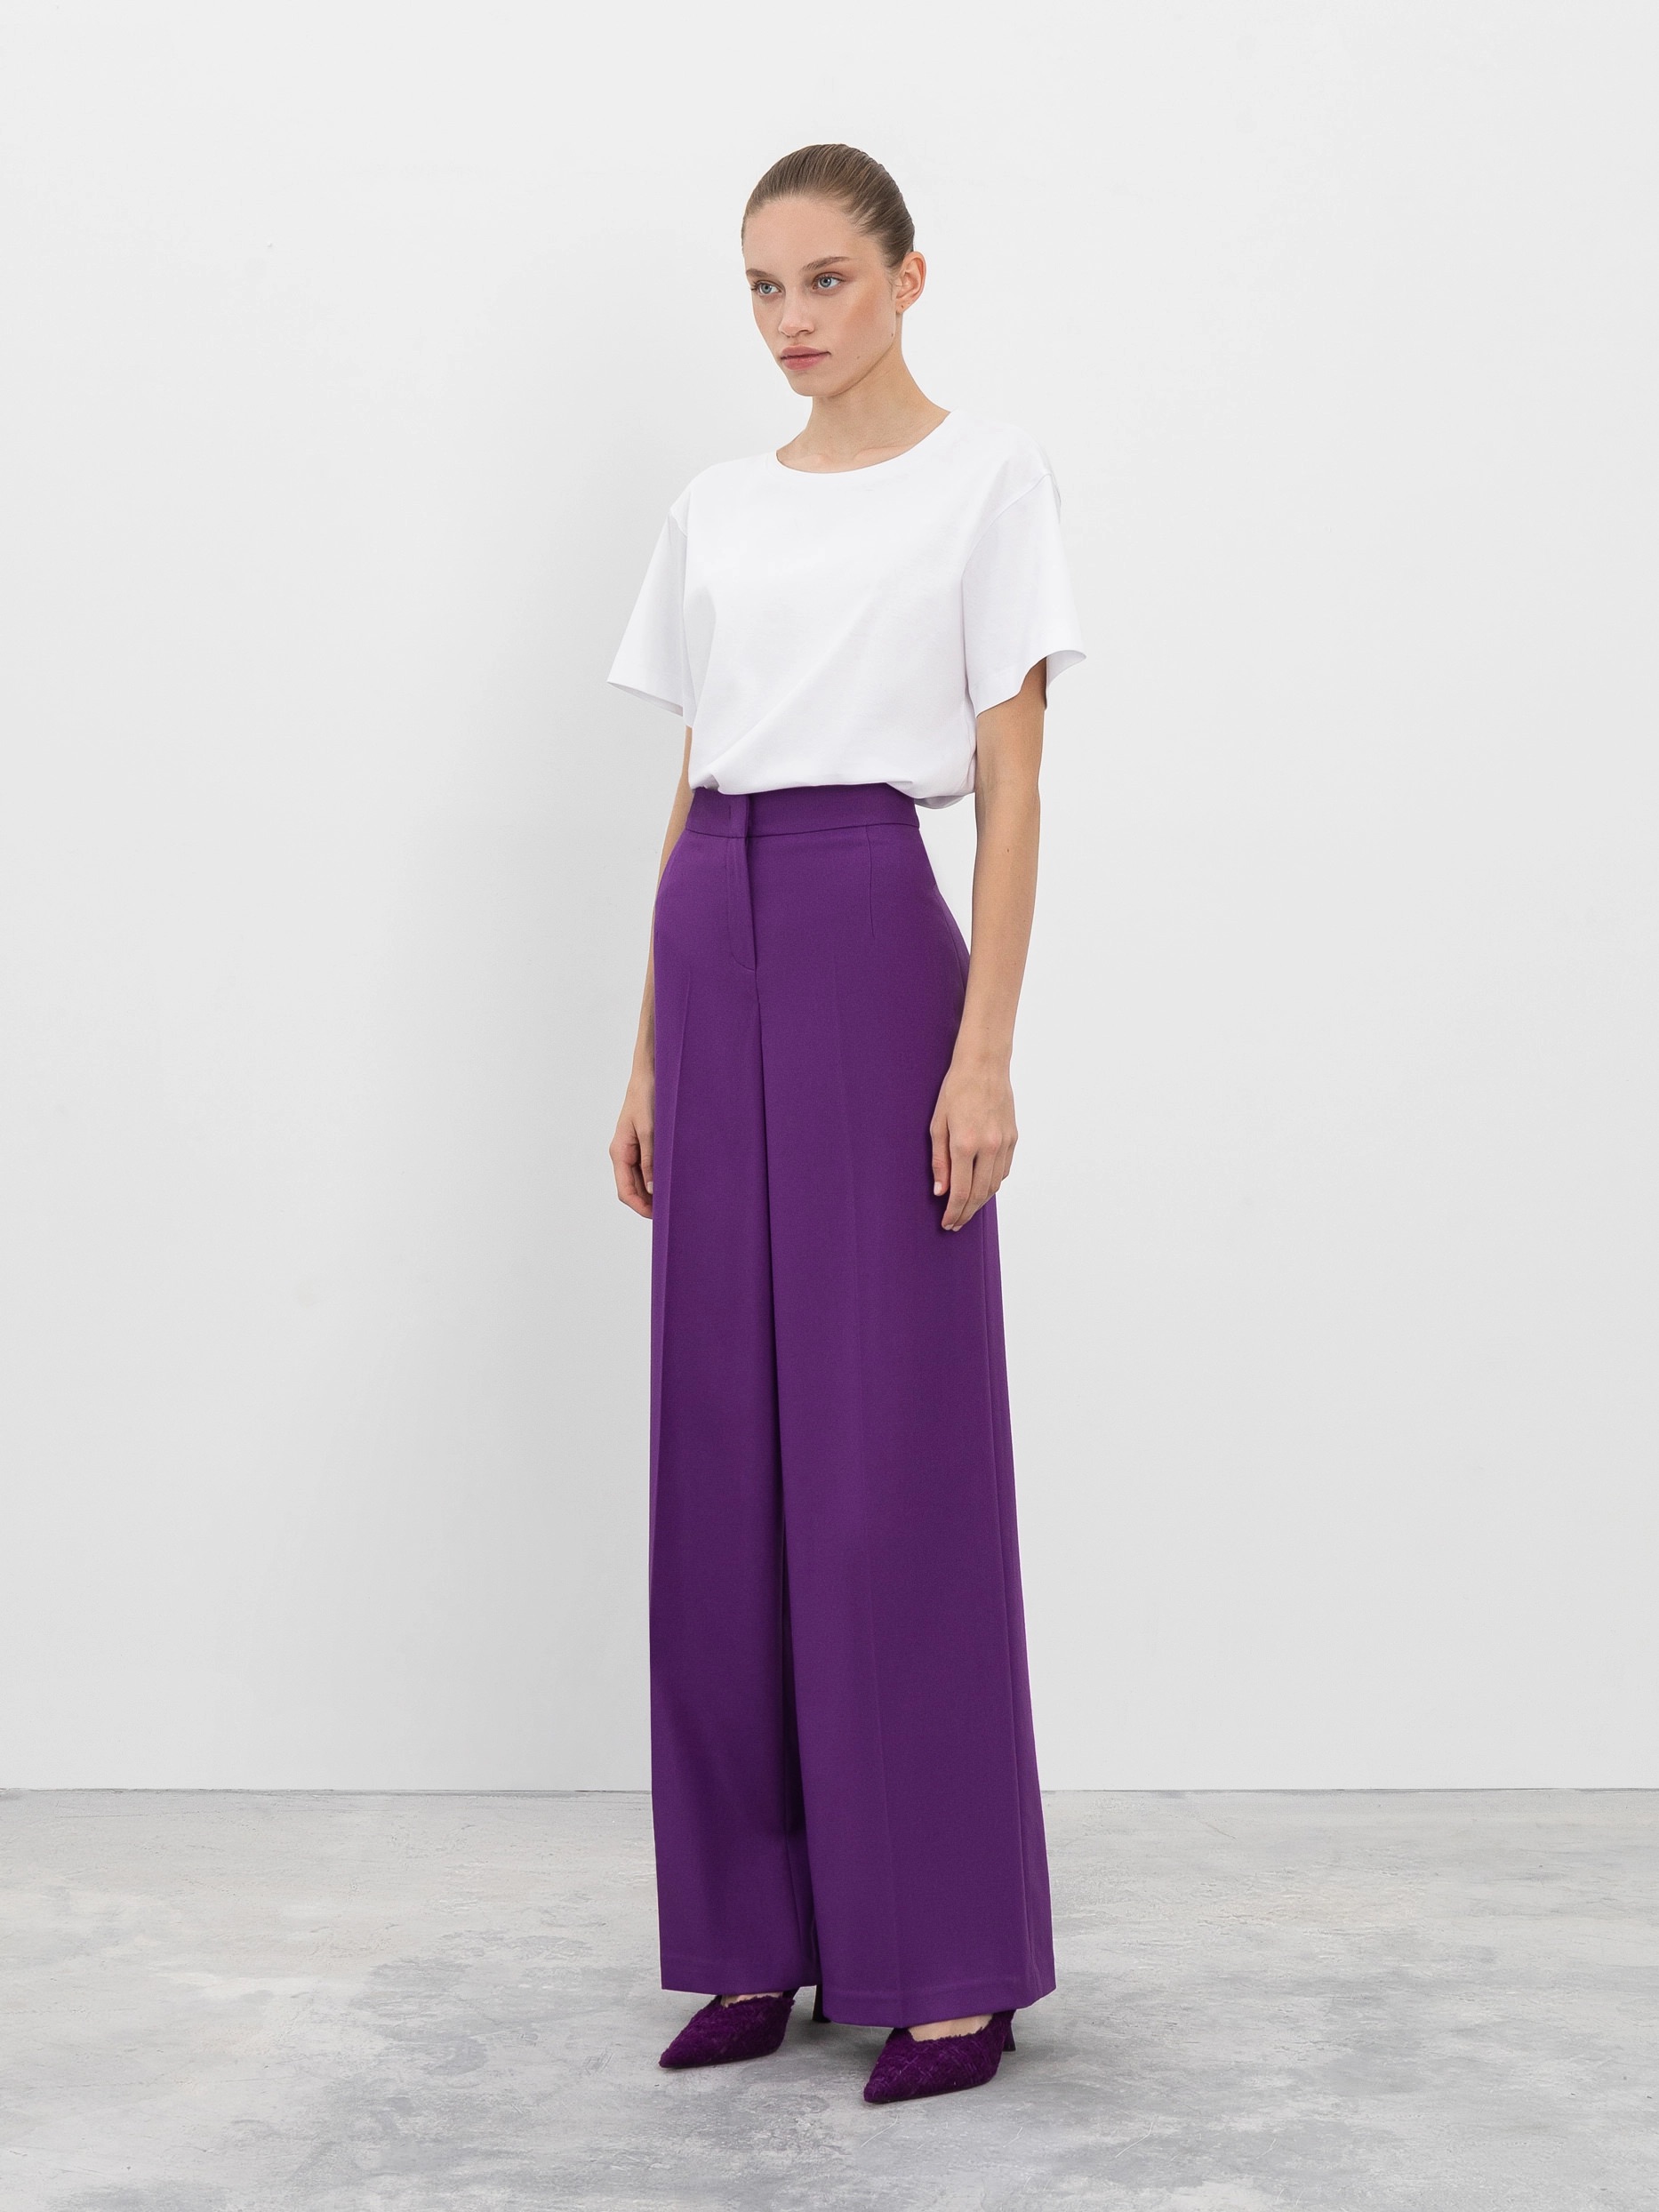 Широкие женские брюки со стрелками фиолетовые от byME 